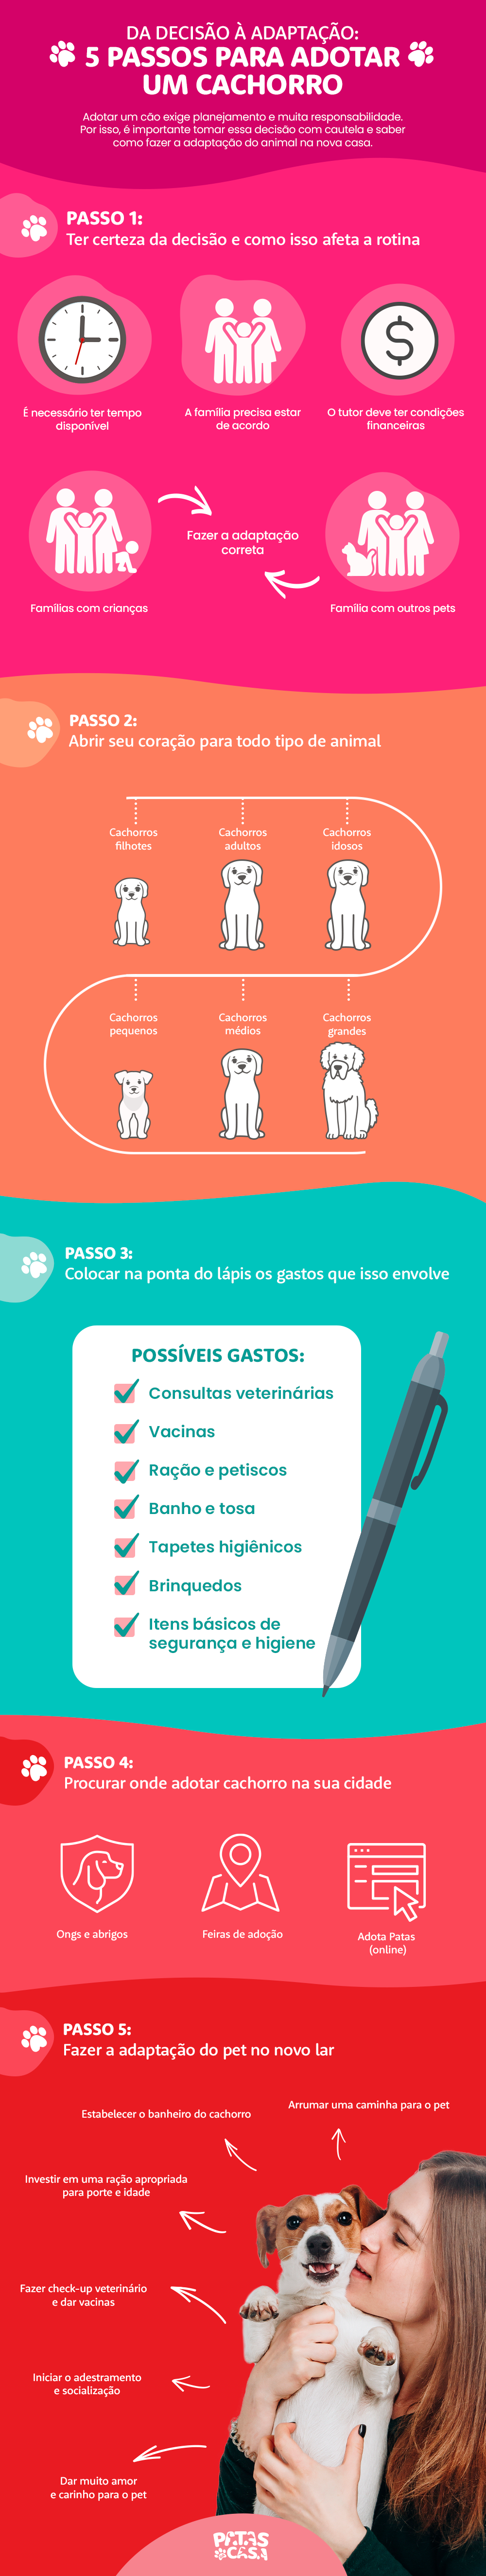 Bloco informativo mostrando todo o ciclo de adoção de cachorro